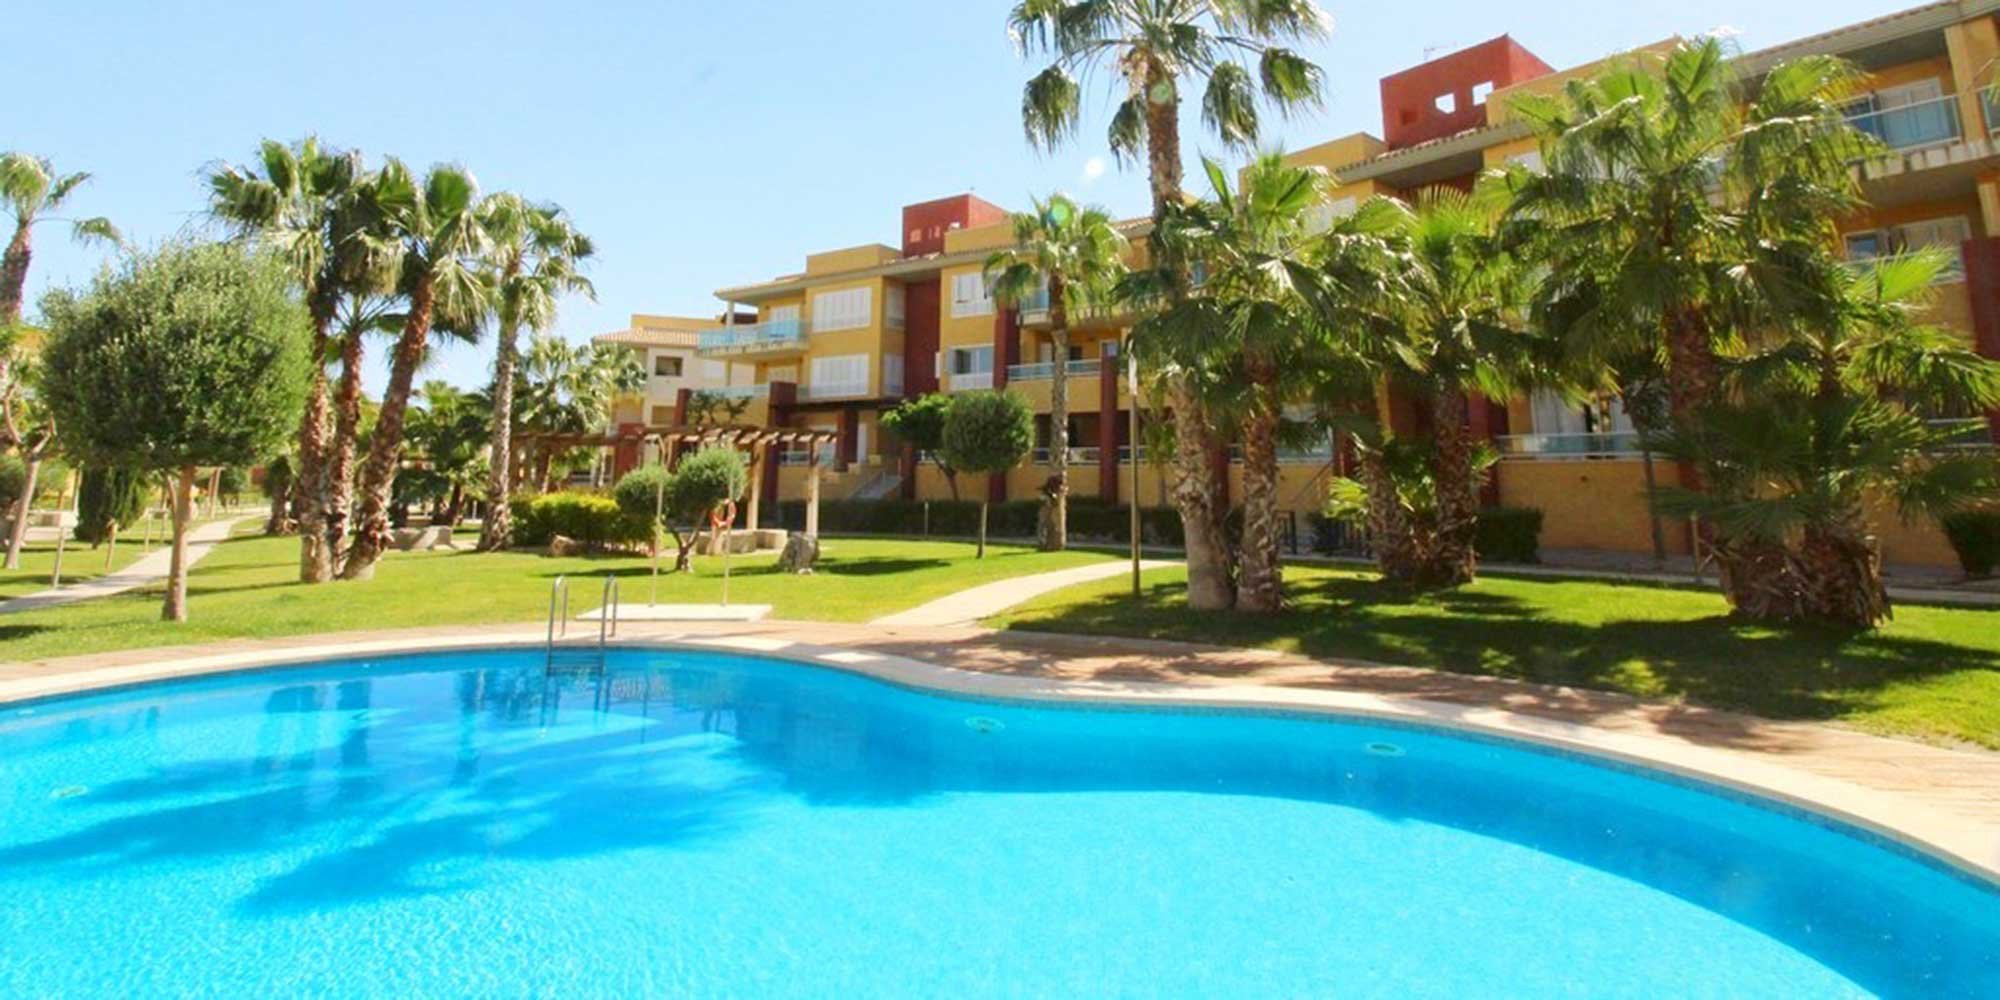 Los Olivos Hacienda del Álamo Hotel & Spa Golf Resort piscina atardecer